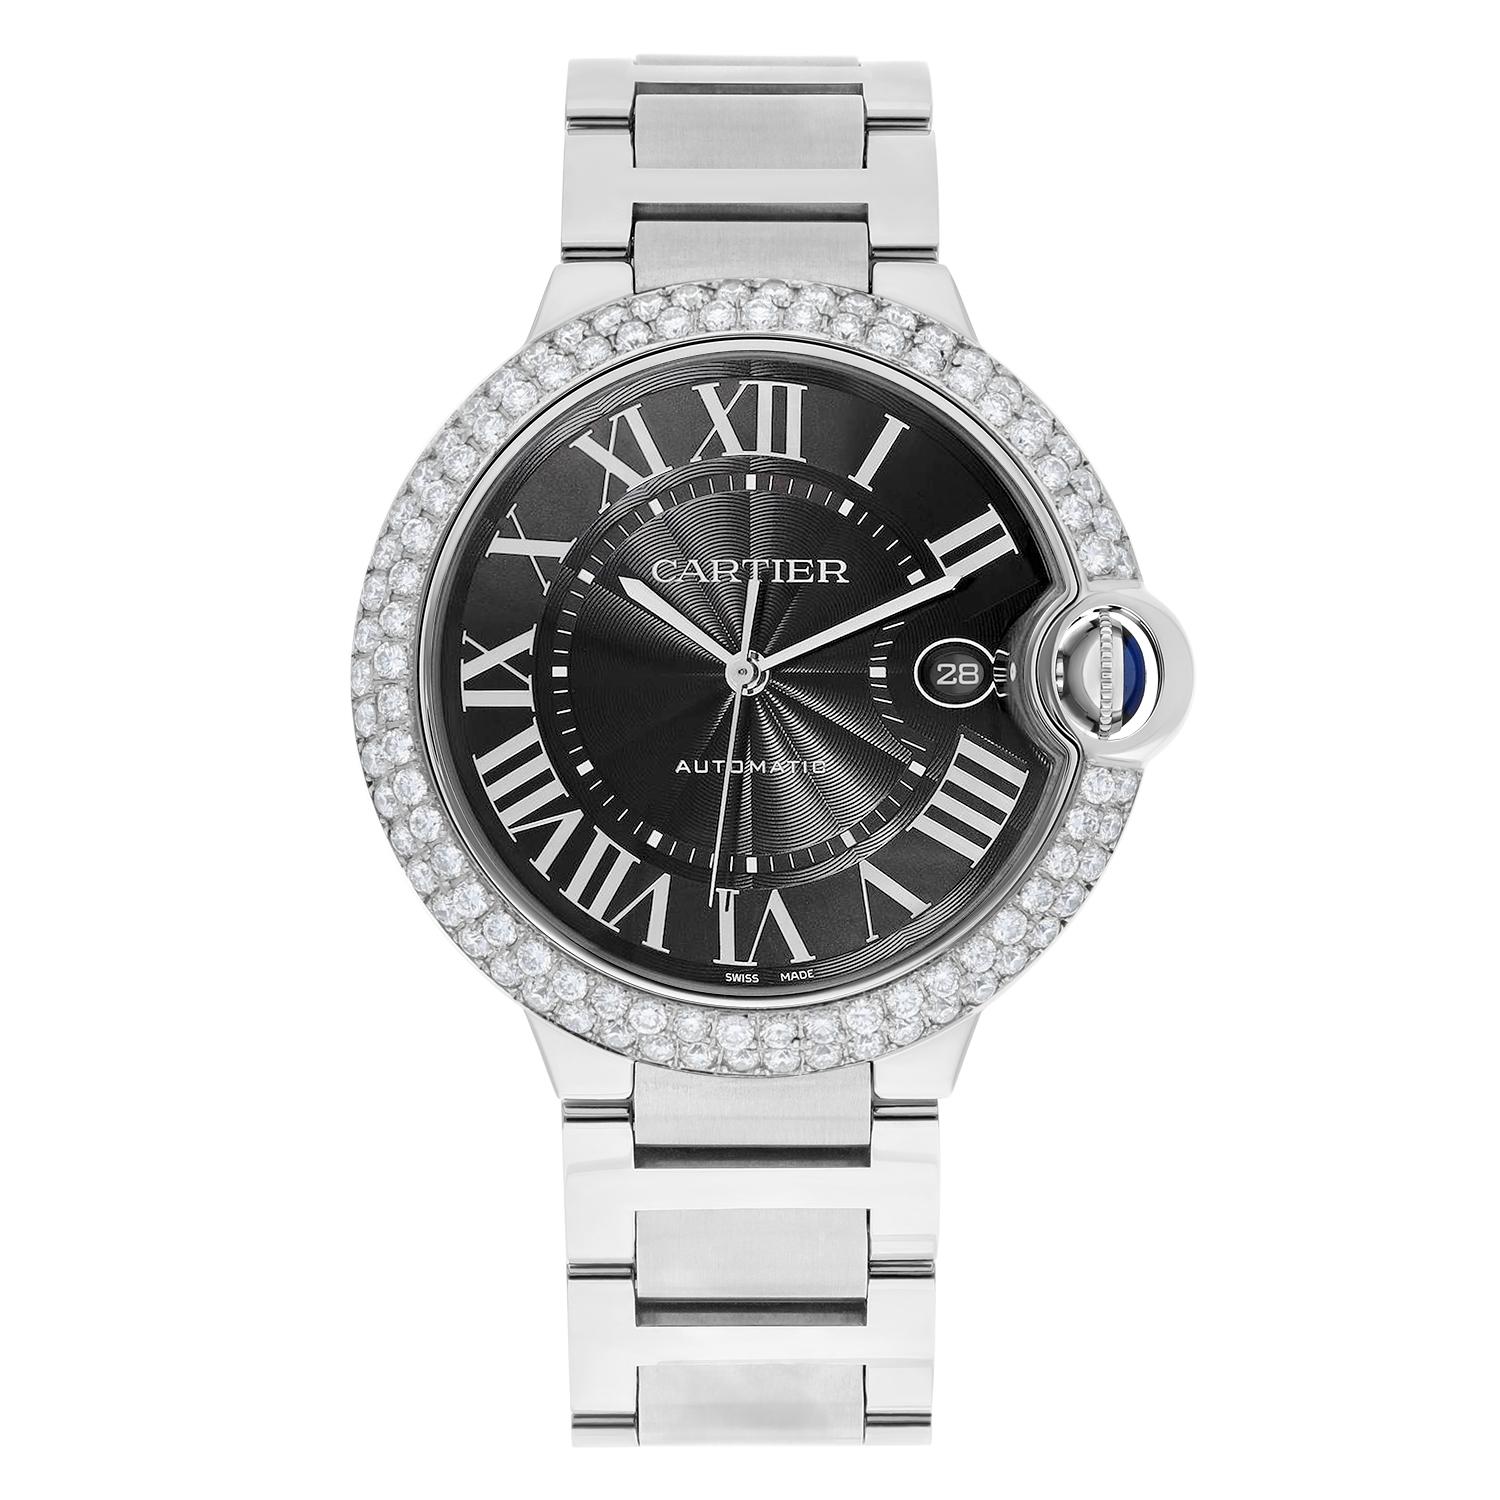 Élevez votre style avec la montre-bracelet Ballon Bleu de Cartier, un accessoire parfait pour toutes les occasions. Cette montre de luxe fabriquée en Suisse est dotée d'un élégant bracelet en acier inoxydable et d'un boîtier rond de 40 mm orné de